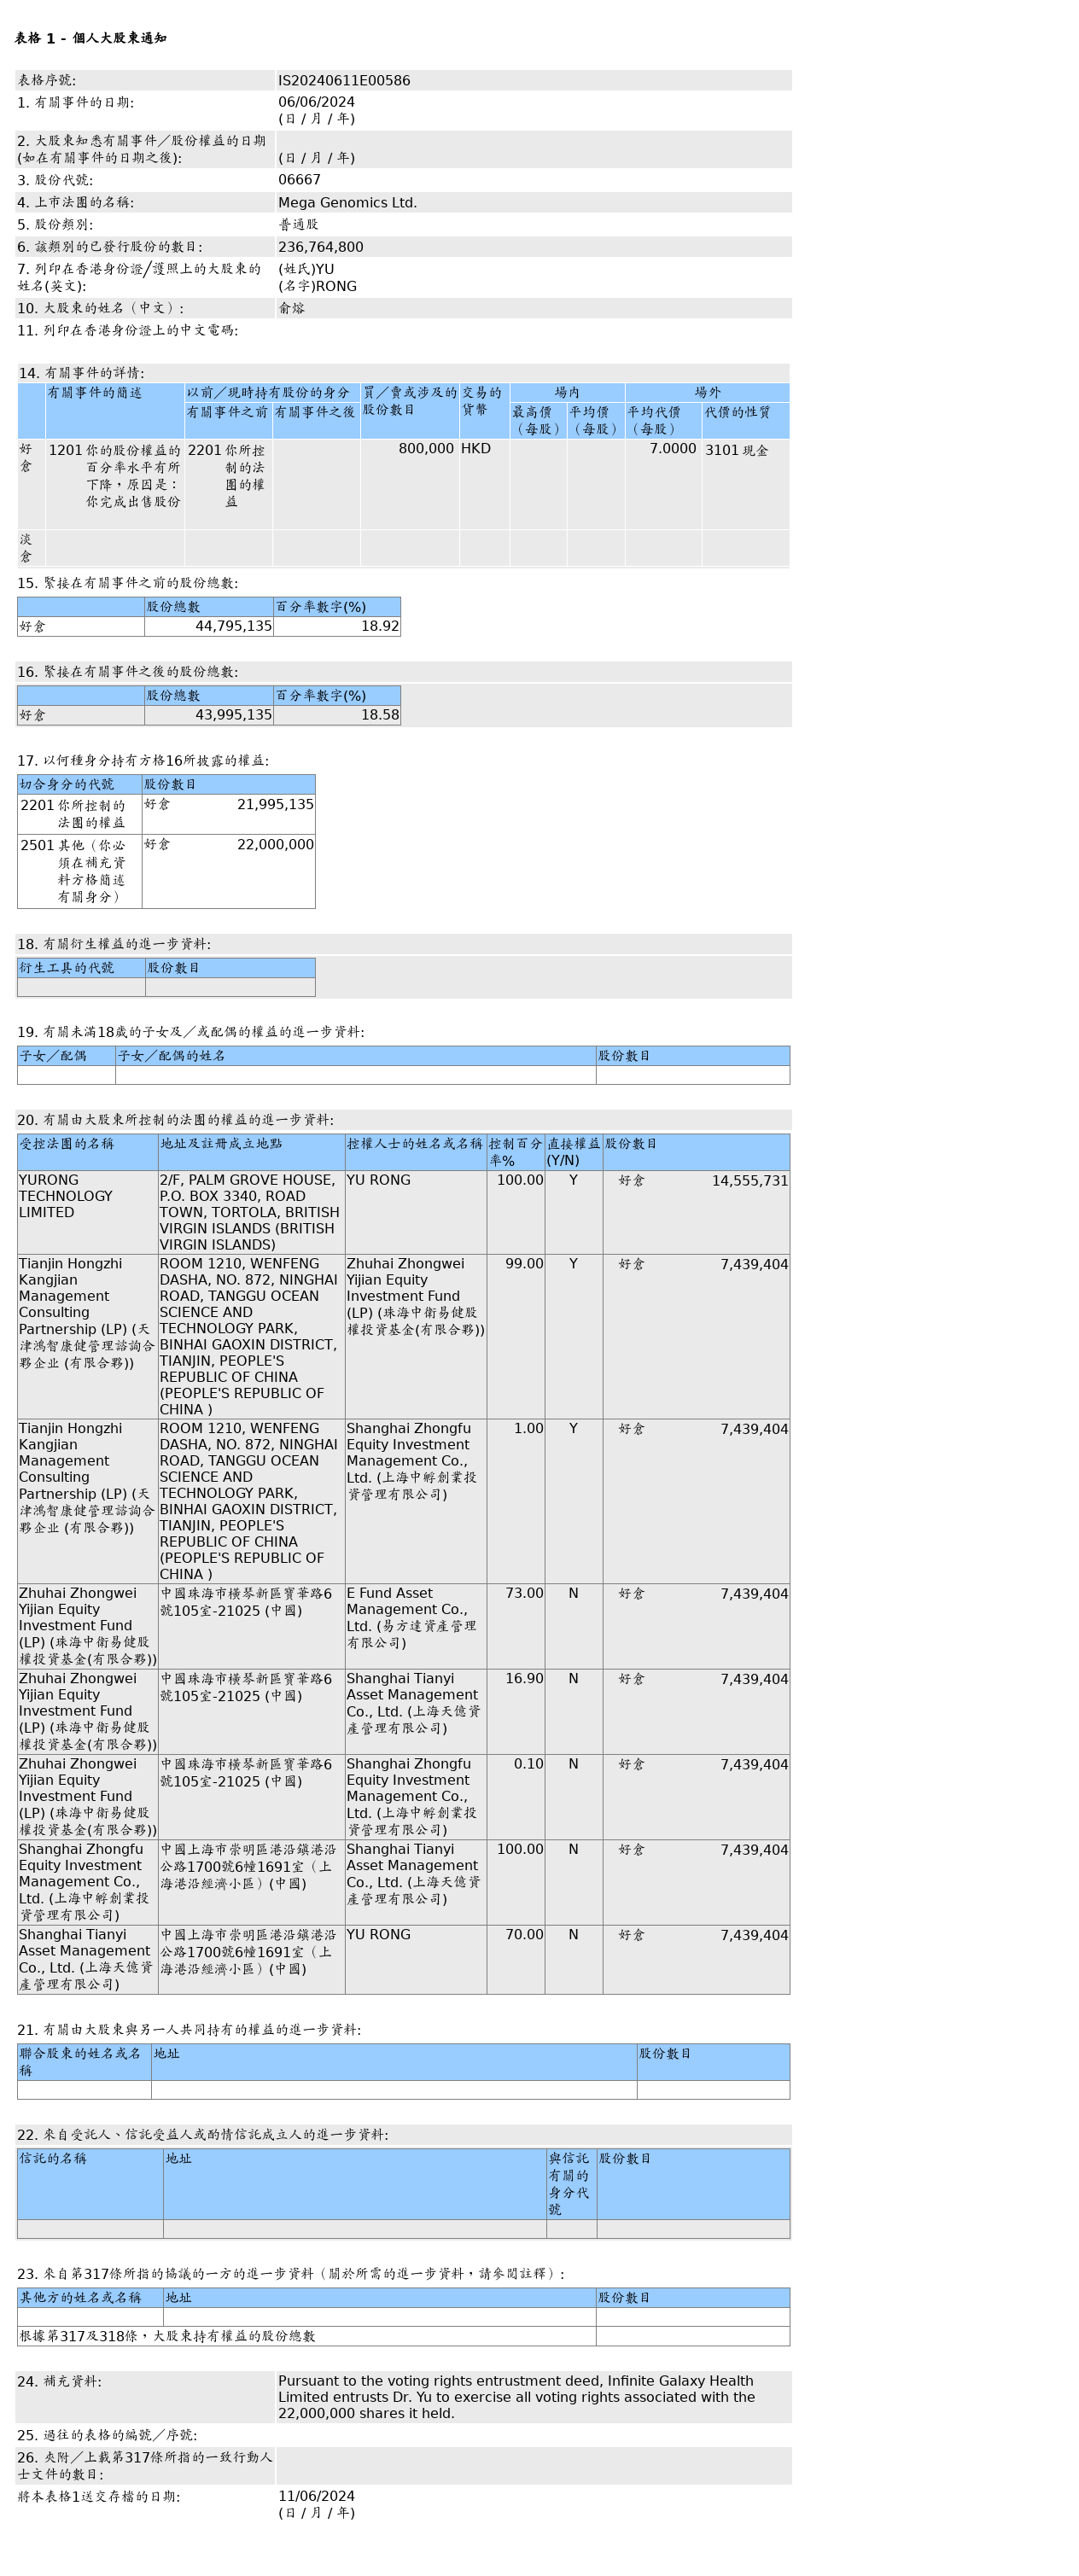 俞熔场外售出美因基因(06667.HK)80万股普通股股份，价值约560万港元